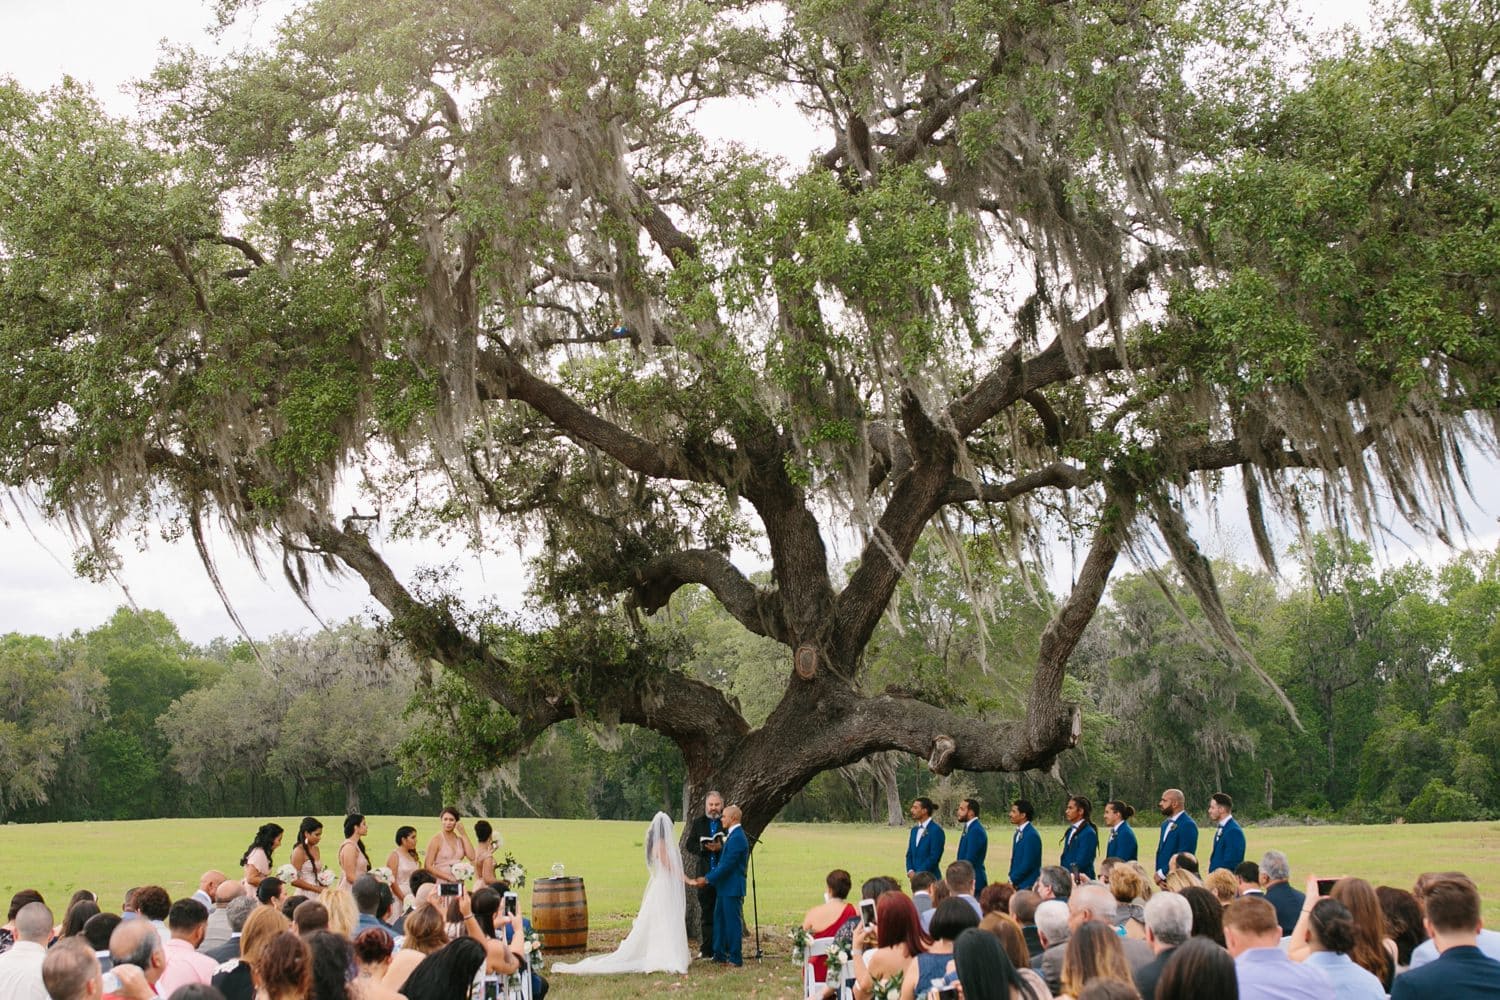 Wedding Ceremony at October Oaks Farm in Orlando, Fl.